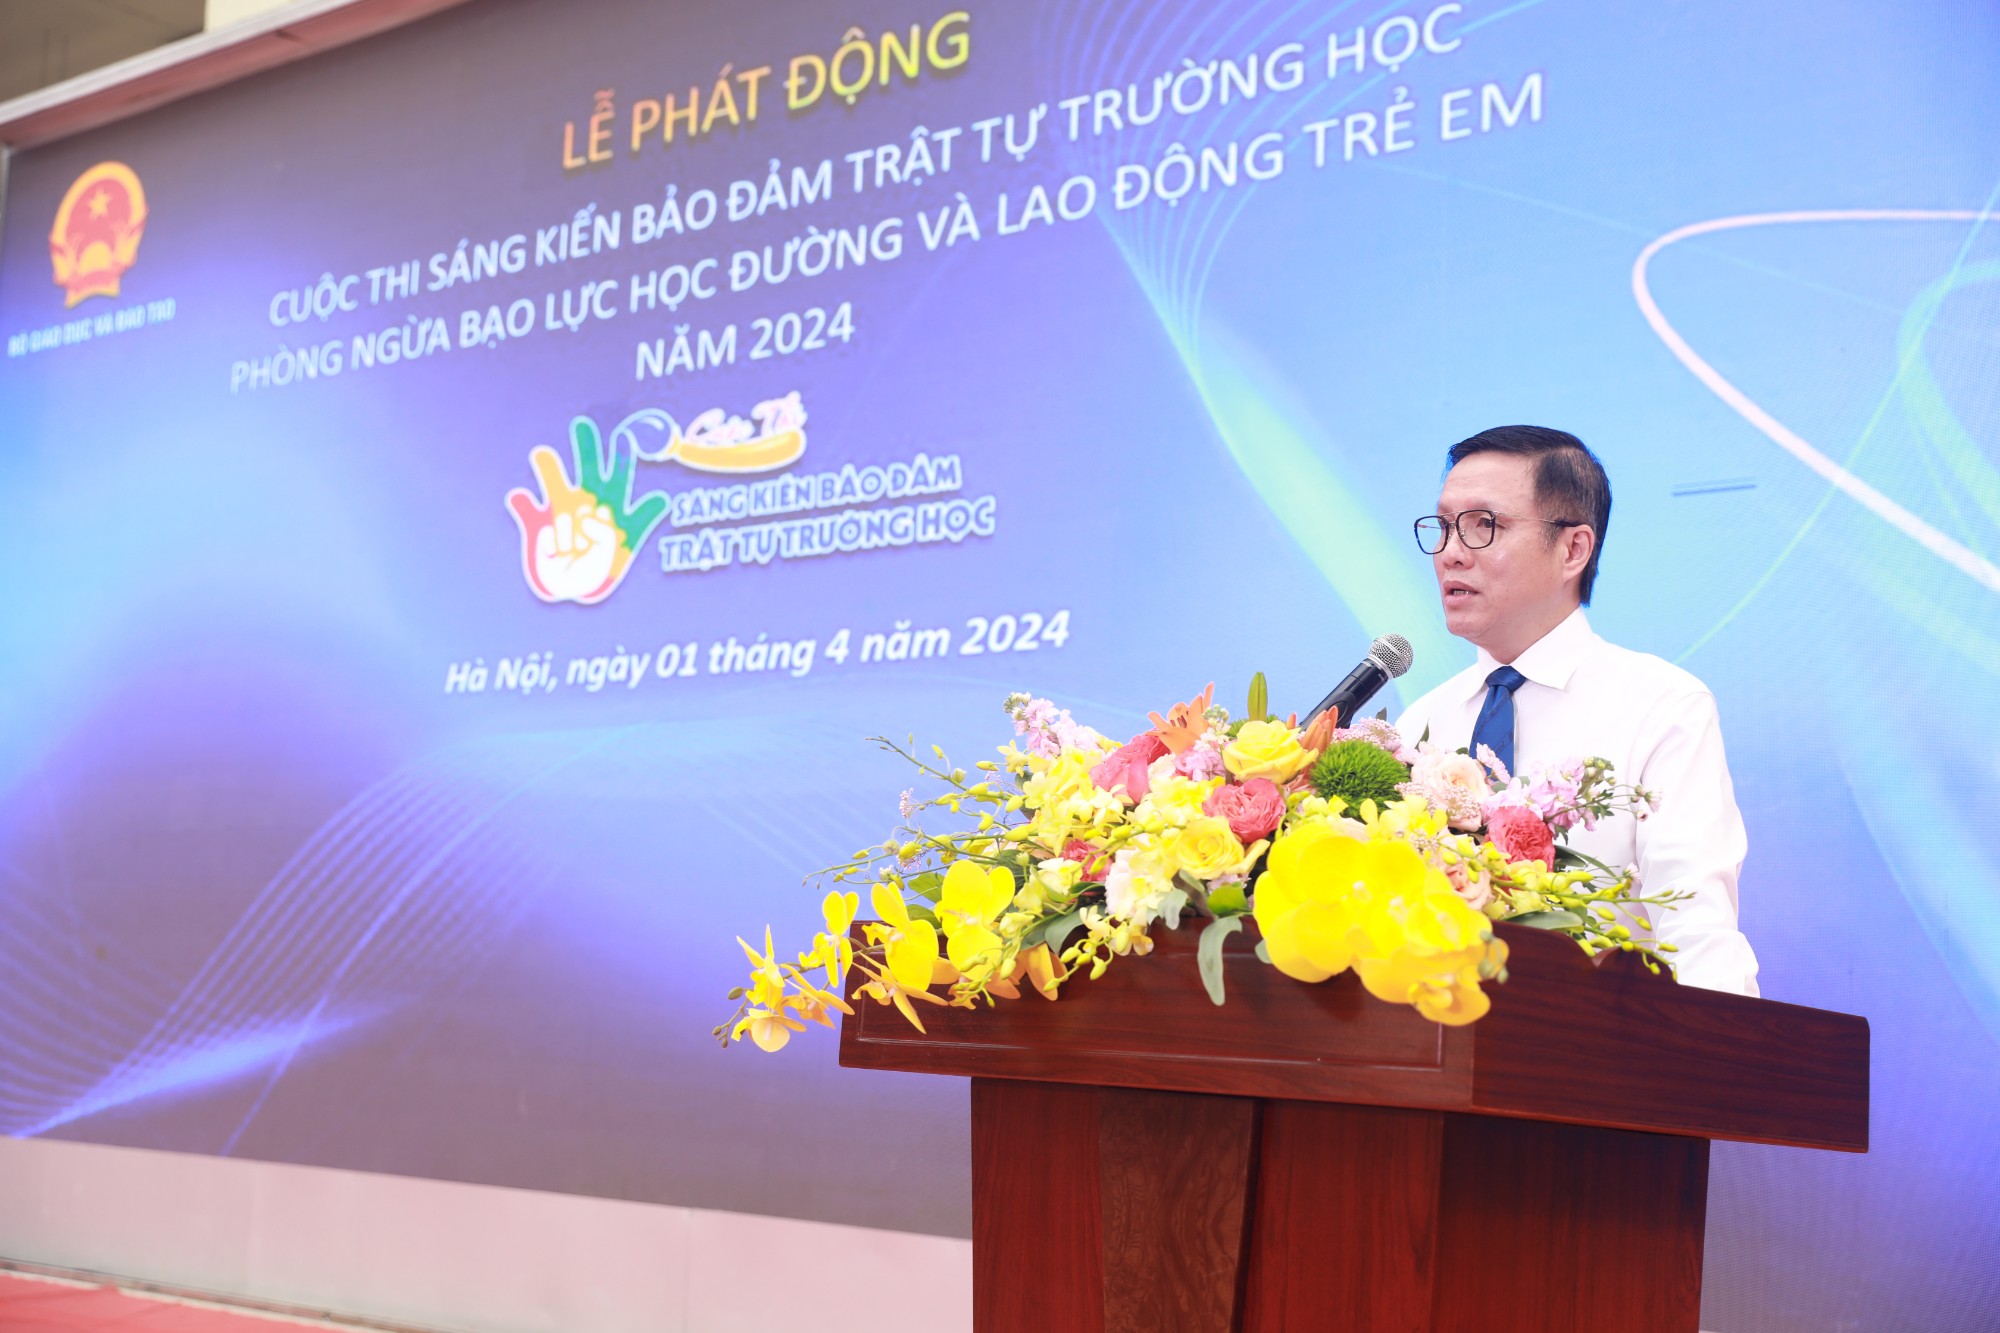 Ông Nguyễn Xuân Dũng, Chủ tịch HĐQT Công ty BITEX chia sẻ tại buổi lễ